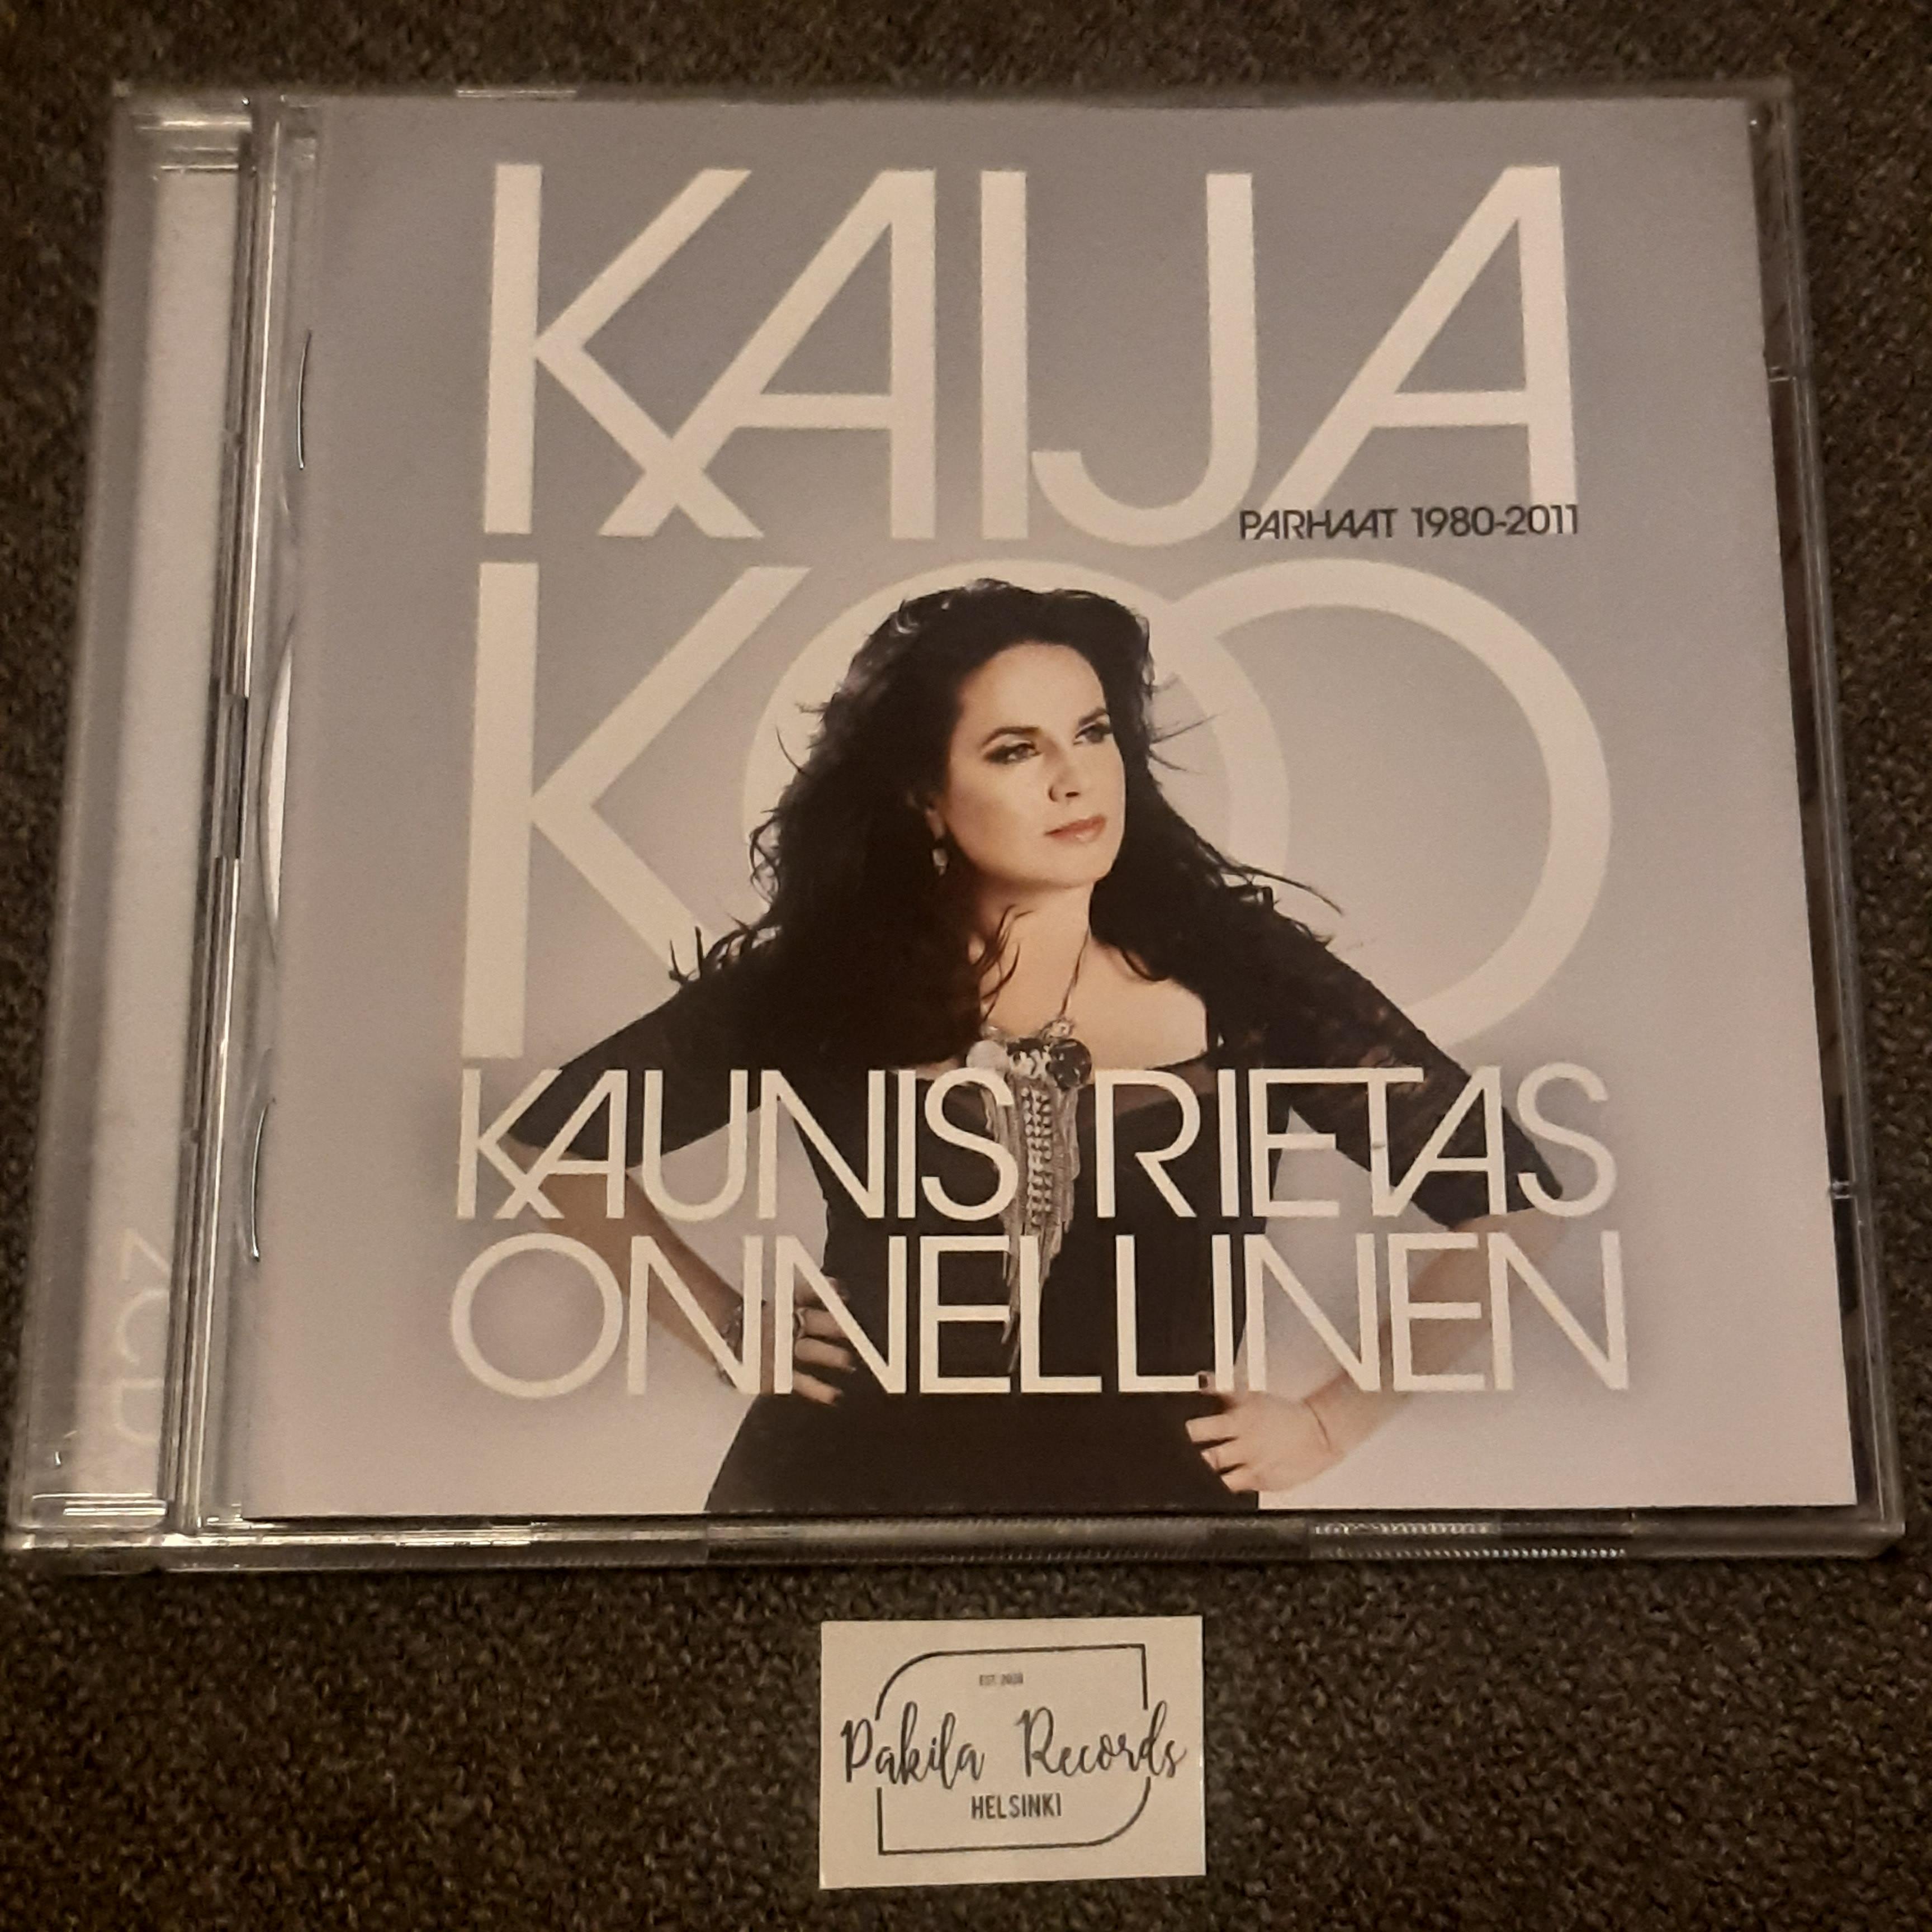 Kaija Koo - Kaunis Rietas Onnellinen,  Parhaat 1980-2011- 2 CD (käytetty)